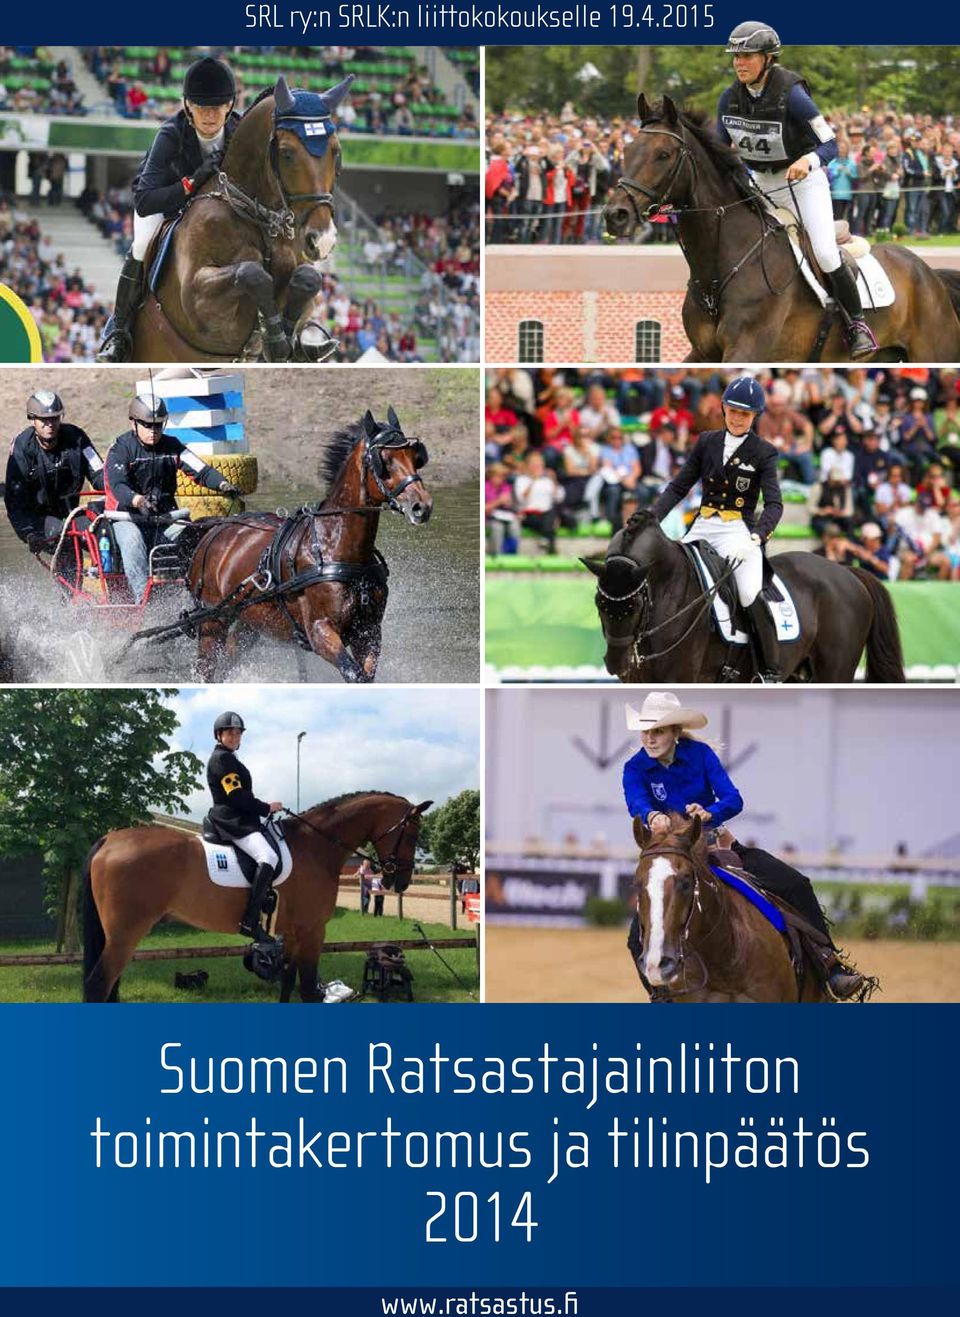 2015 Suomen Ratsastajainliiton